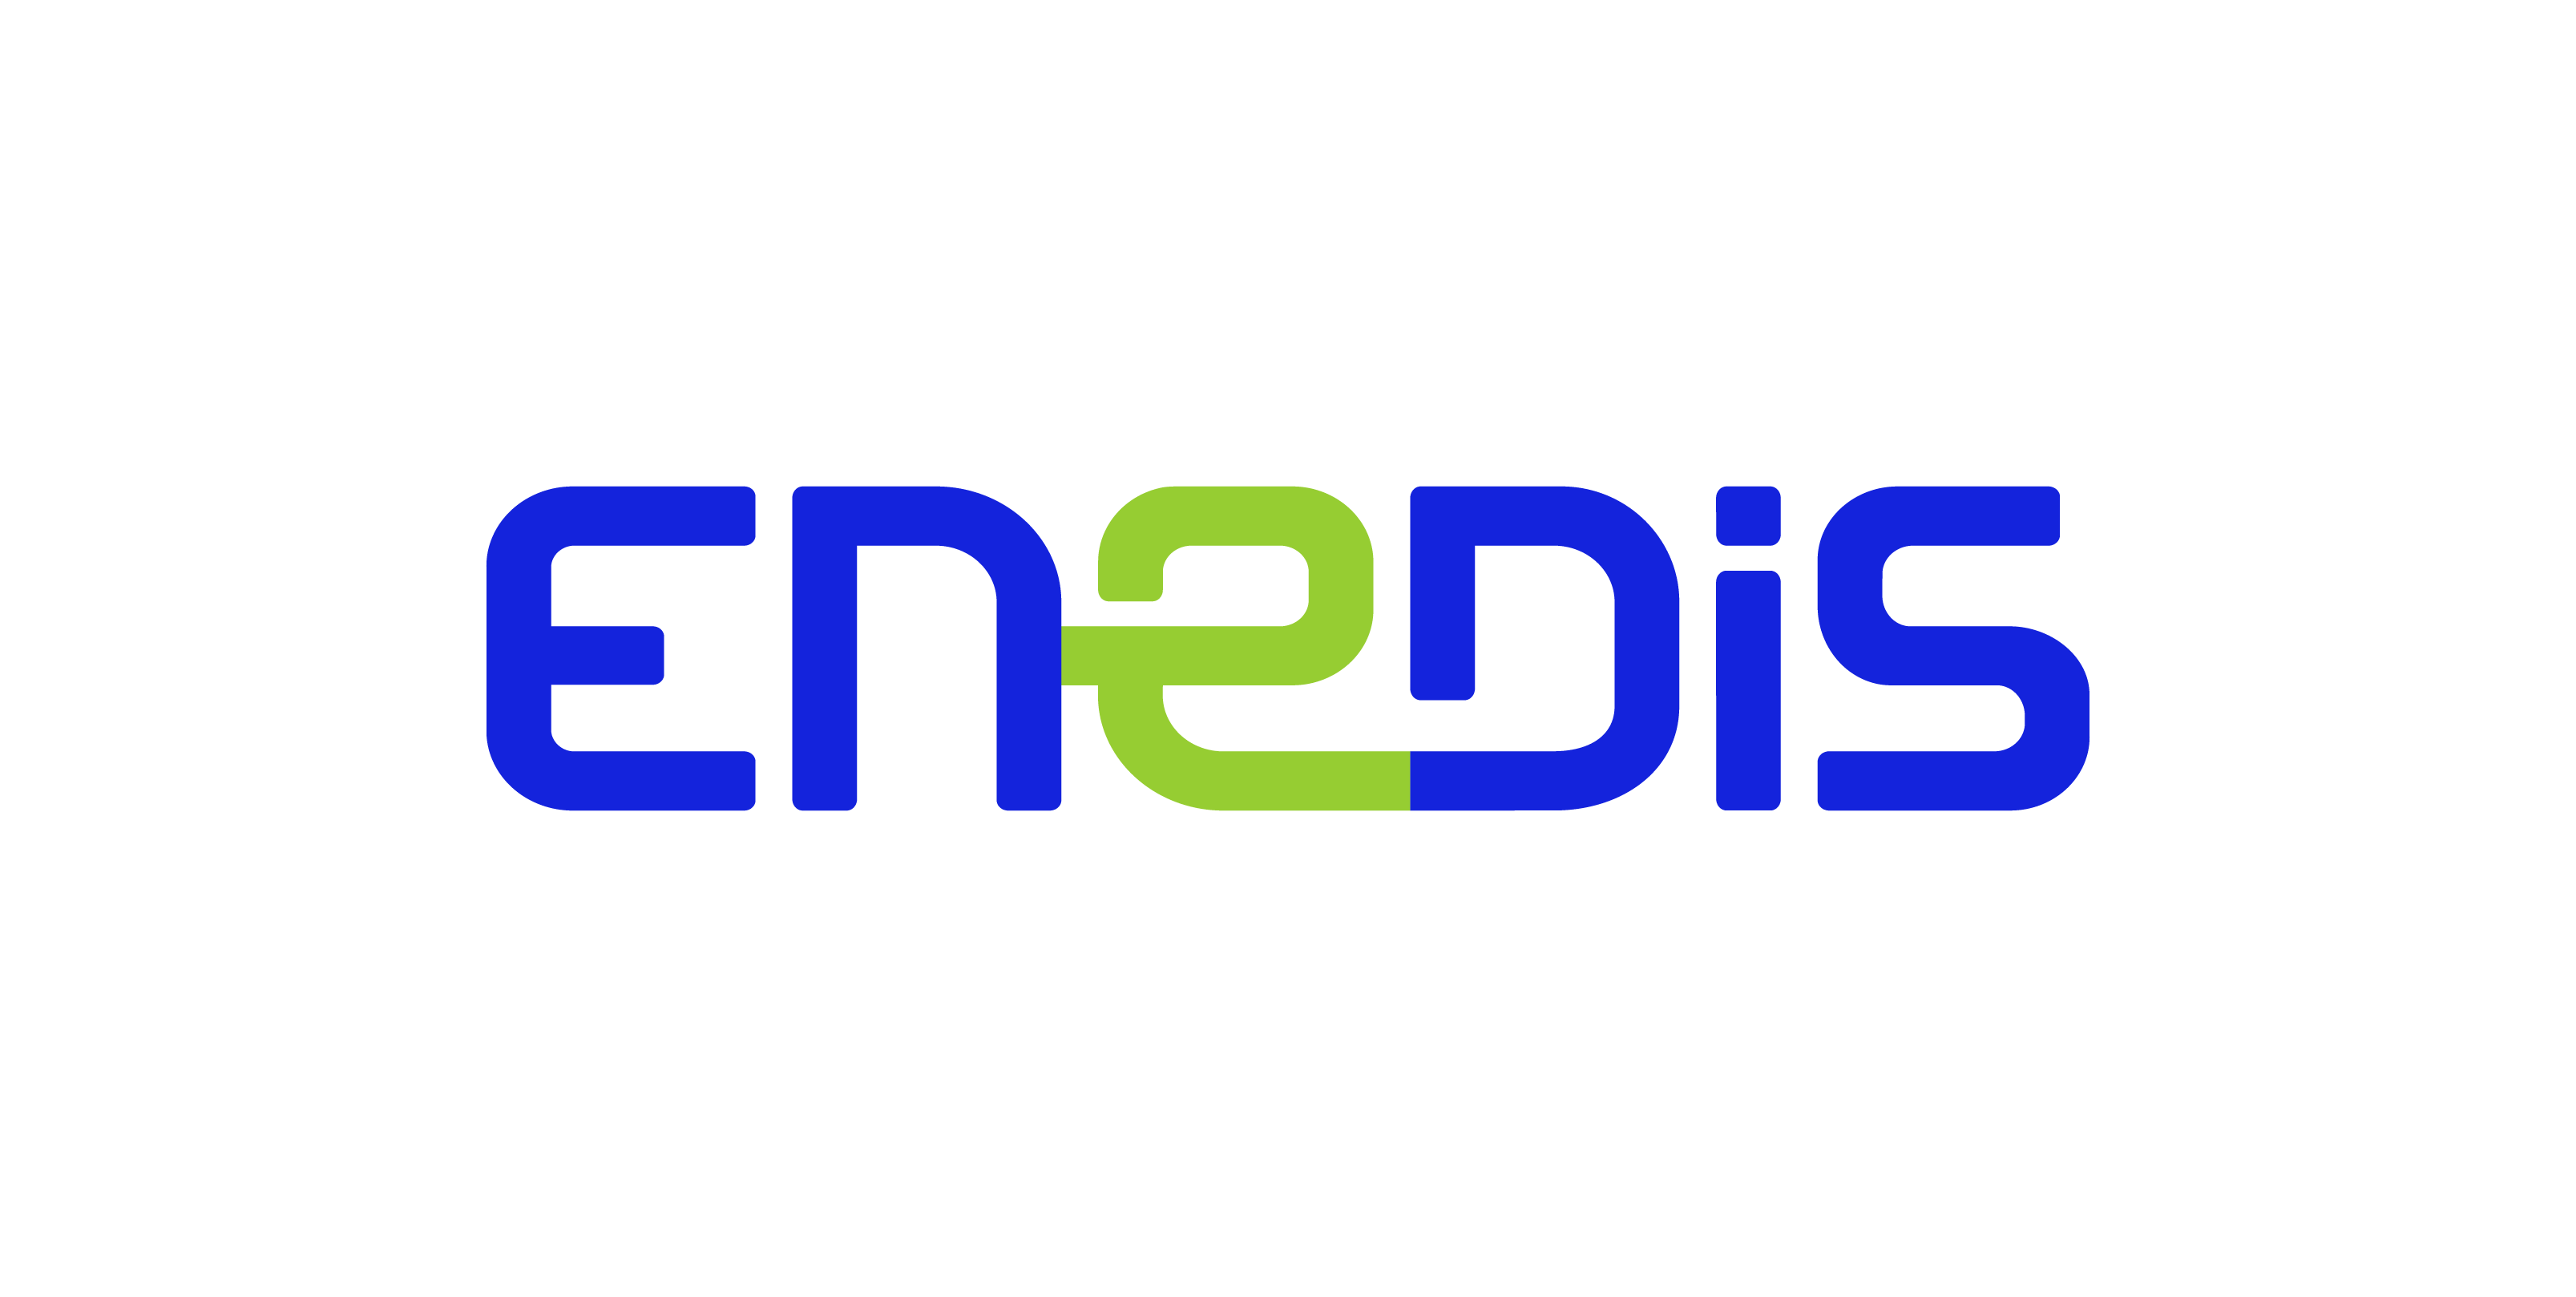 Logo de ENEDIS